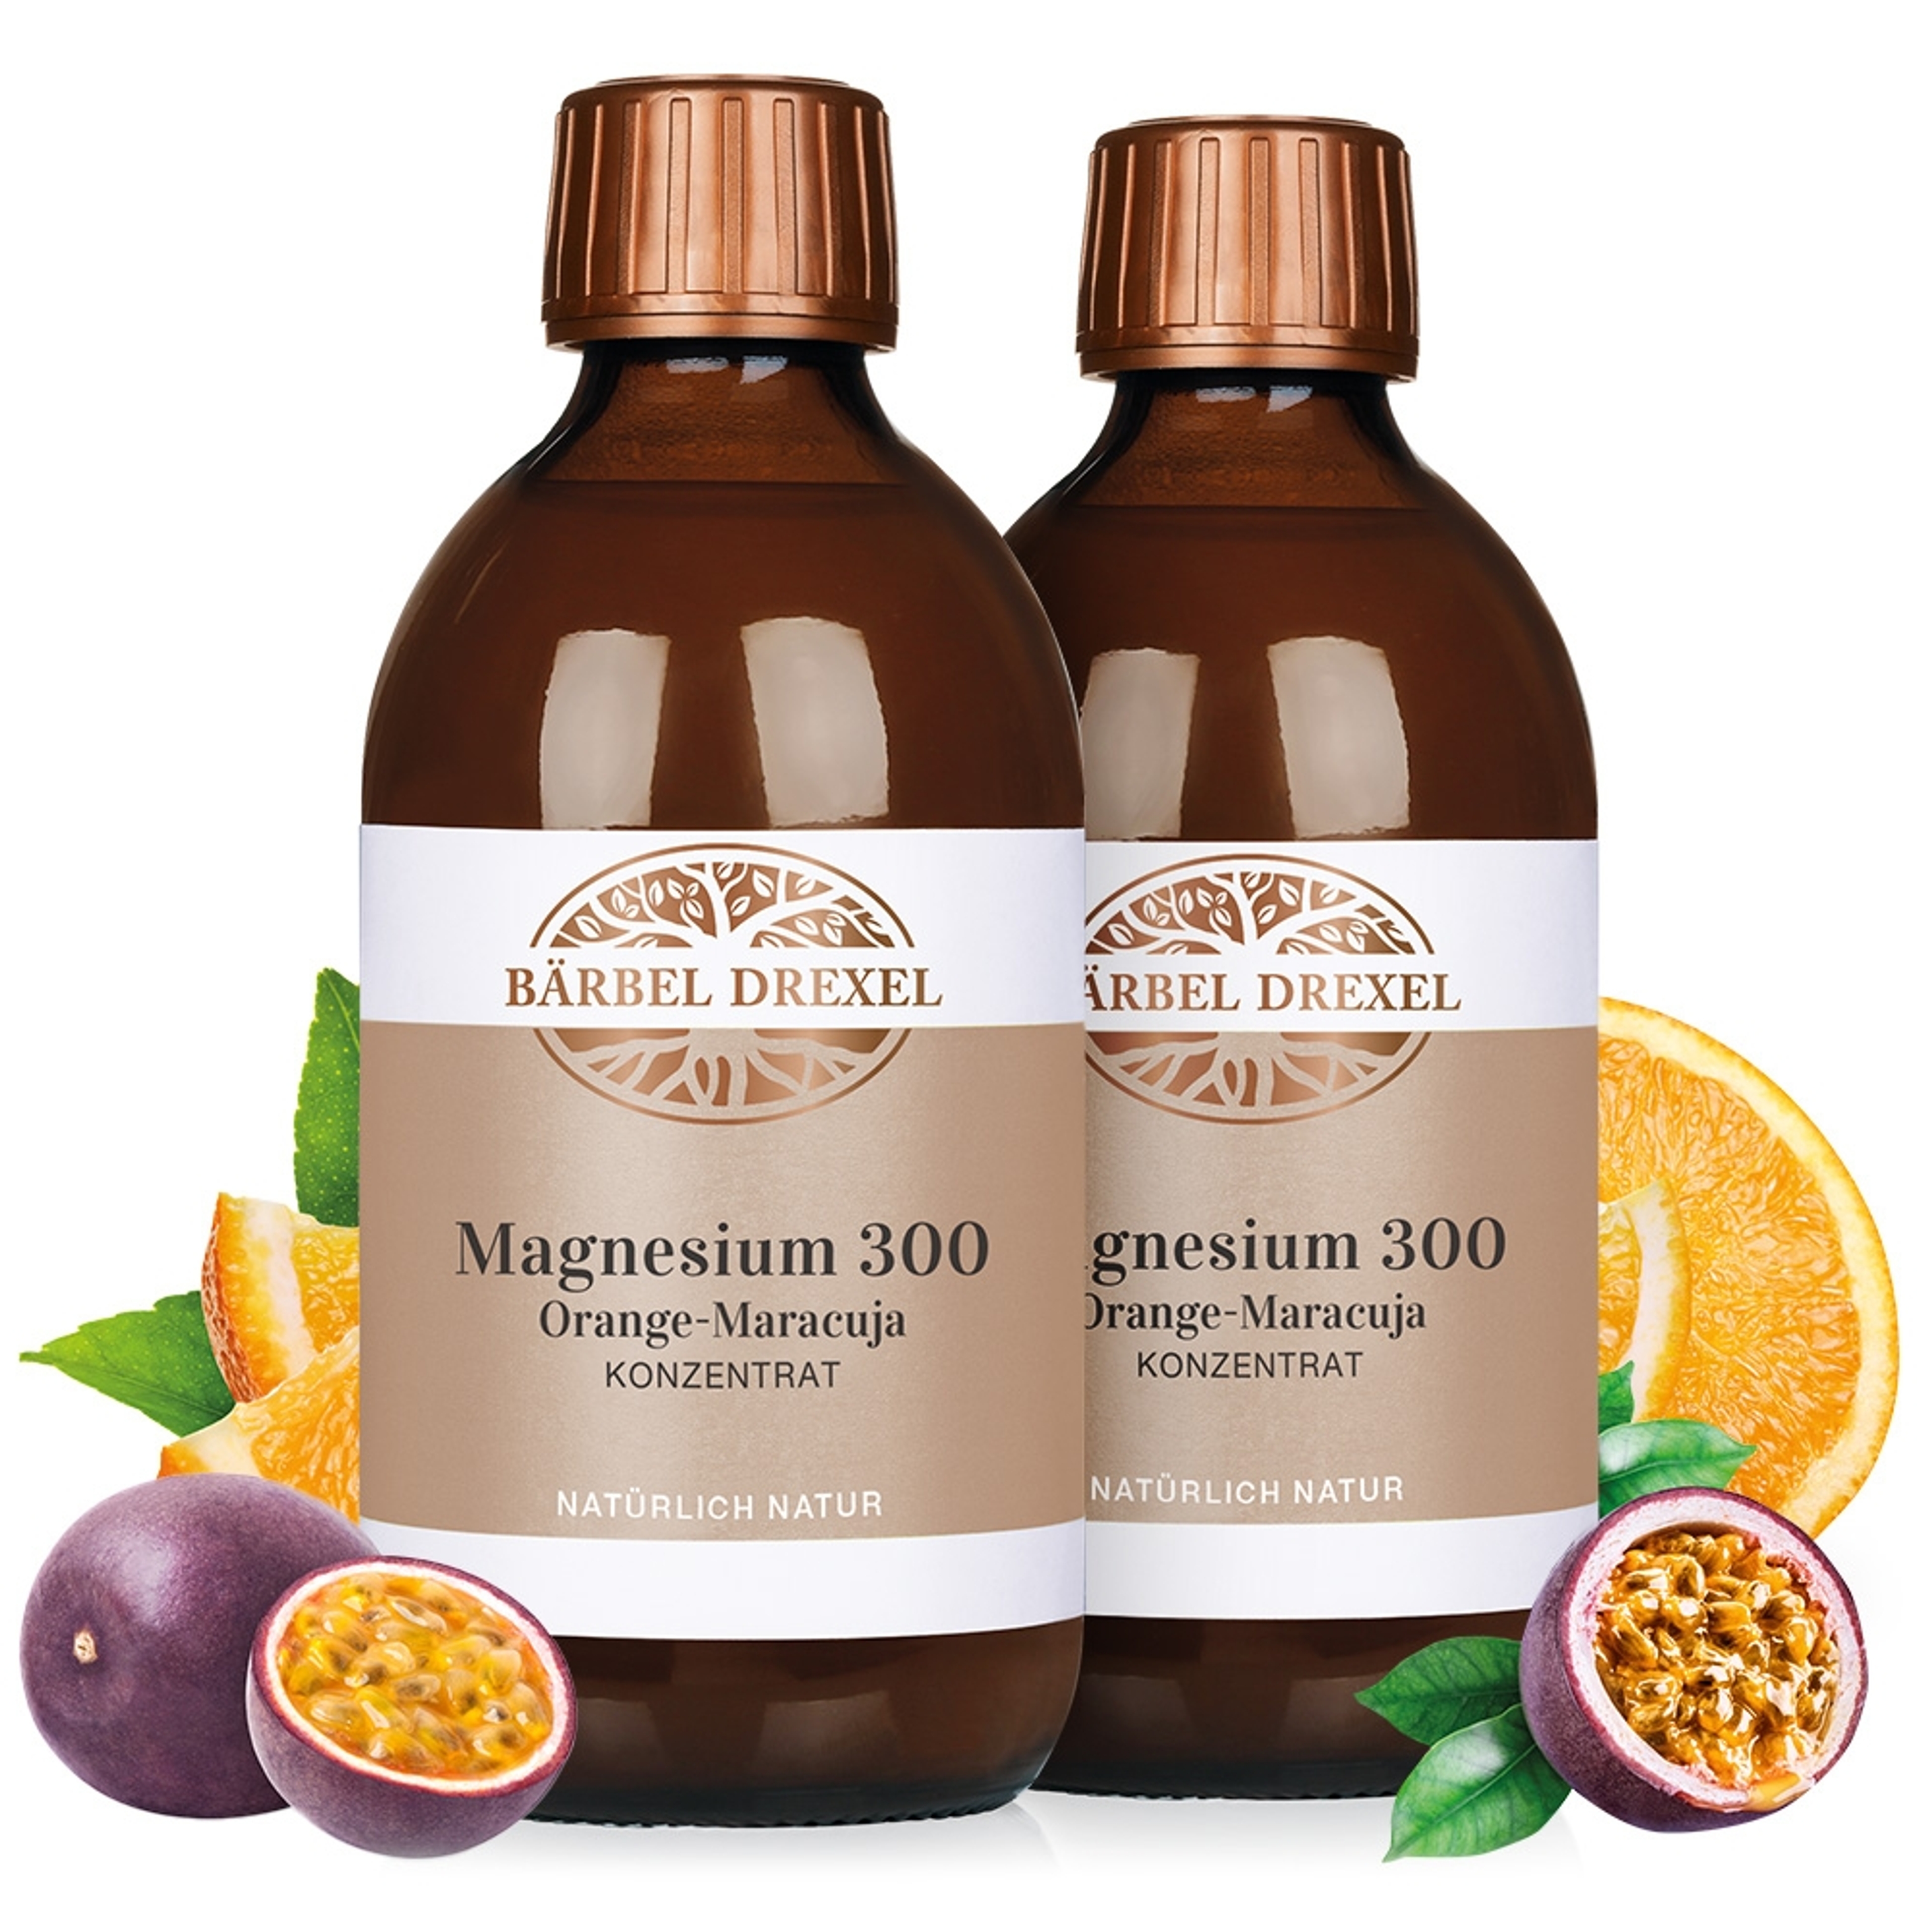 Duo Magnesium 300 Orange-Maracuja Konzentrat